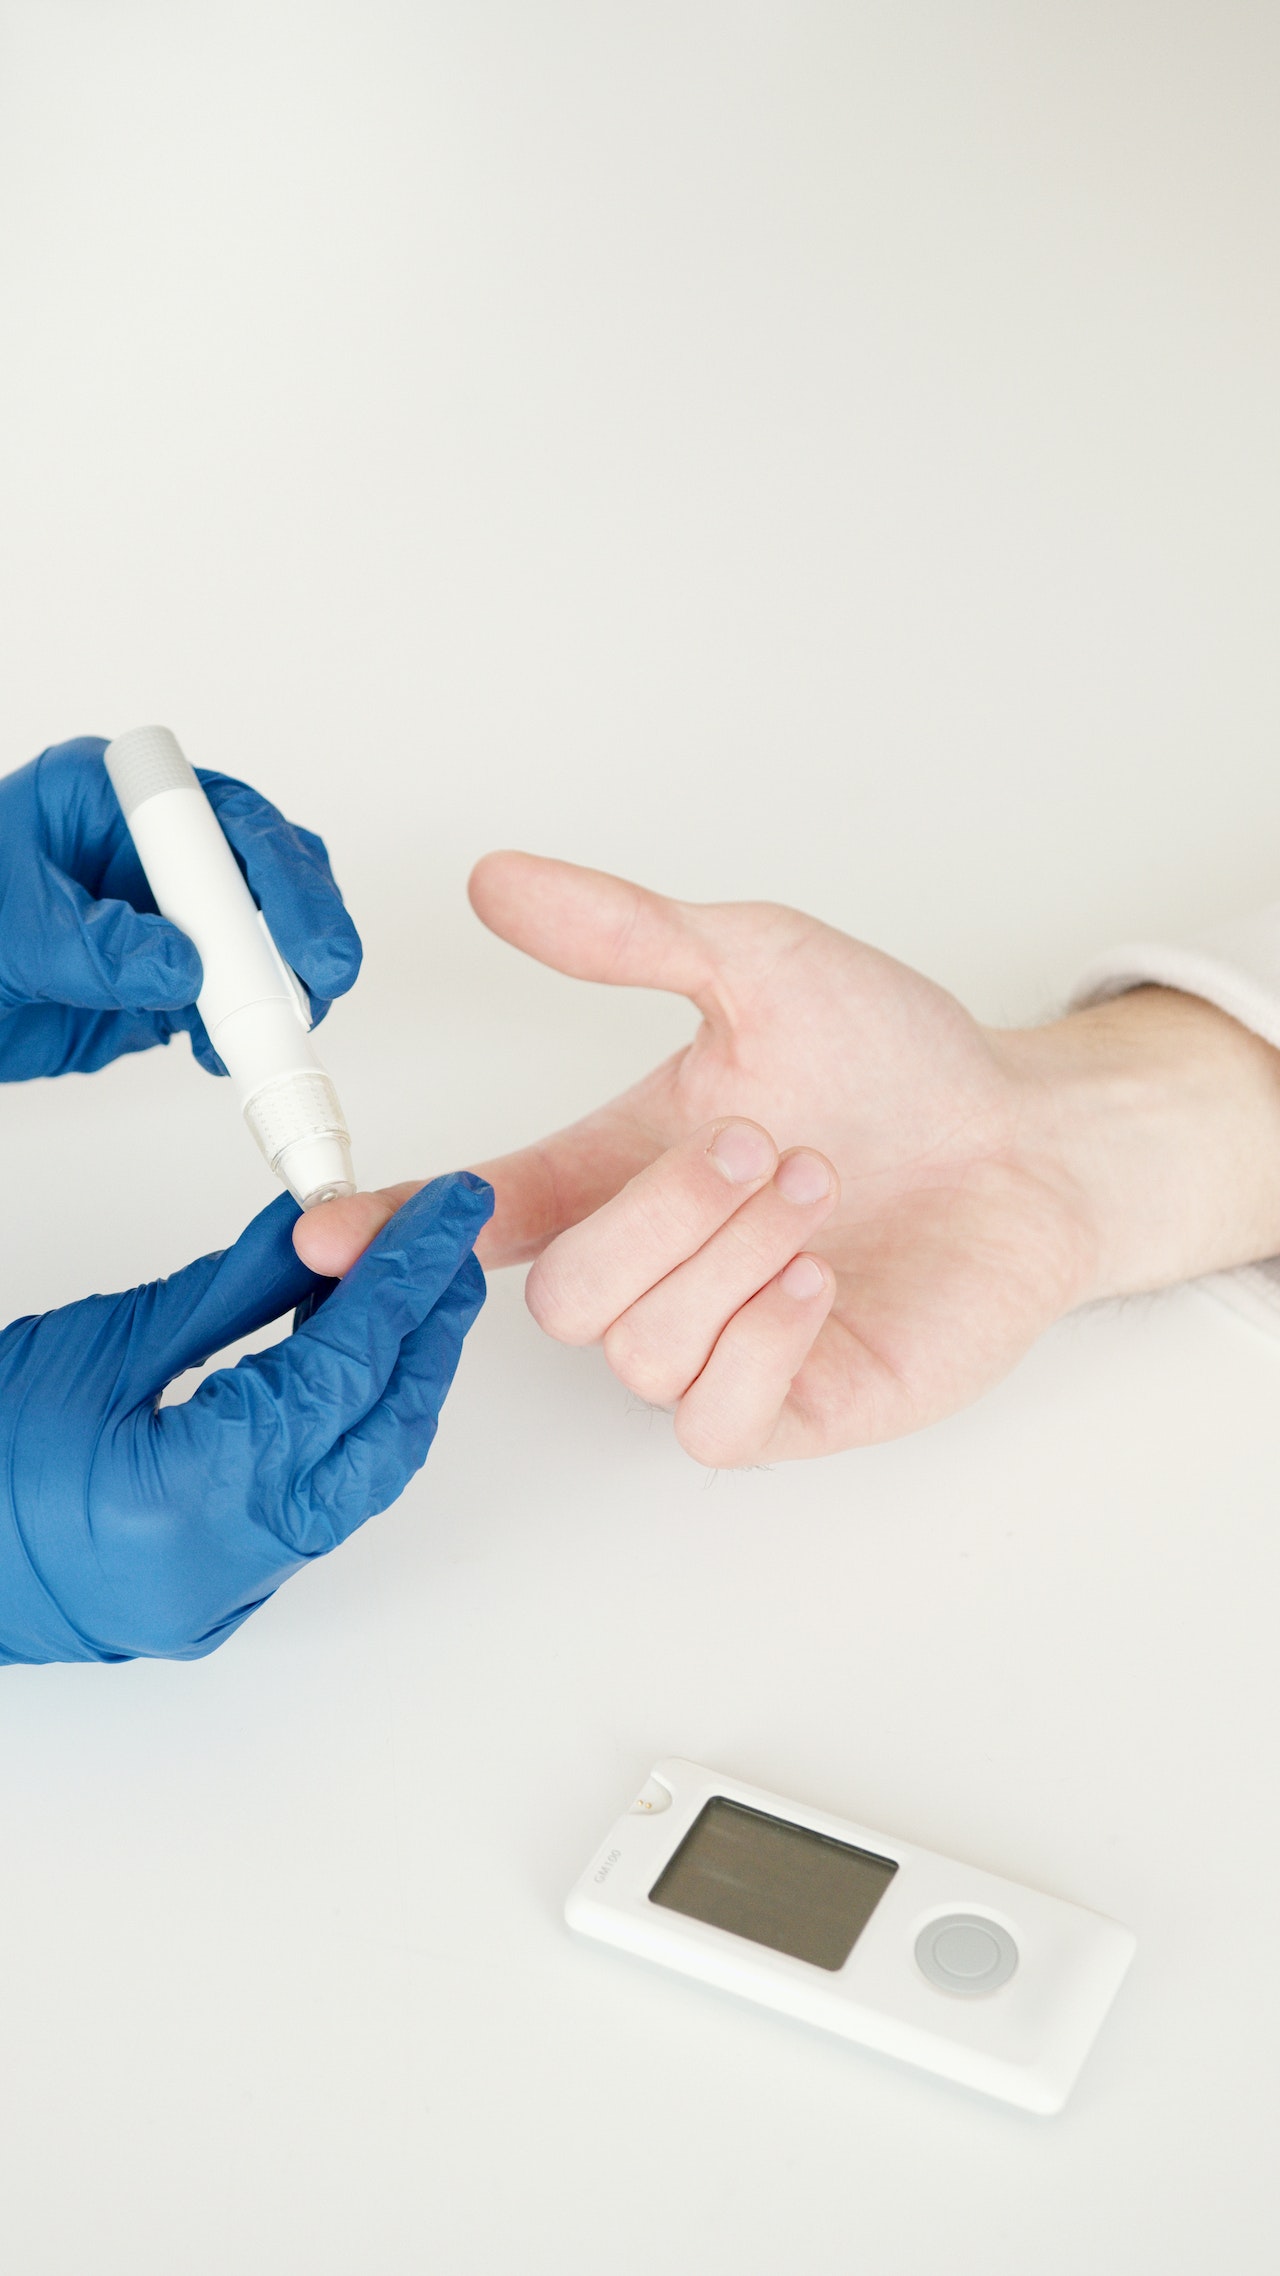 Krzywa insulinowa – Czy warto badać? Cena i znaczenie wyników